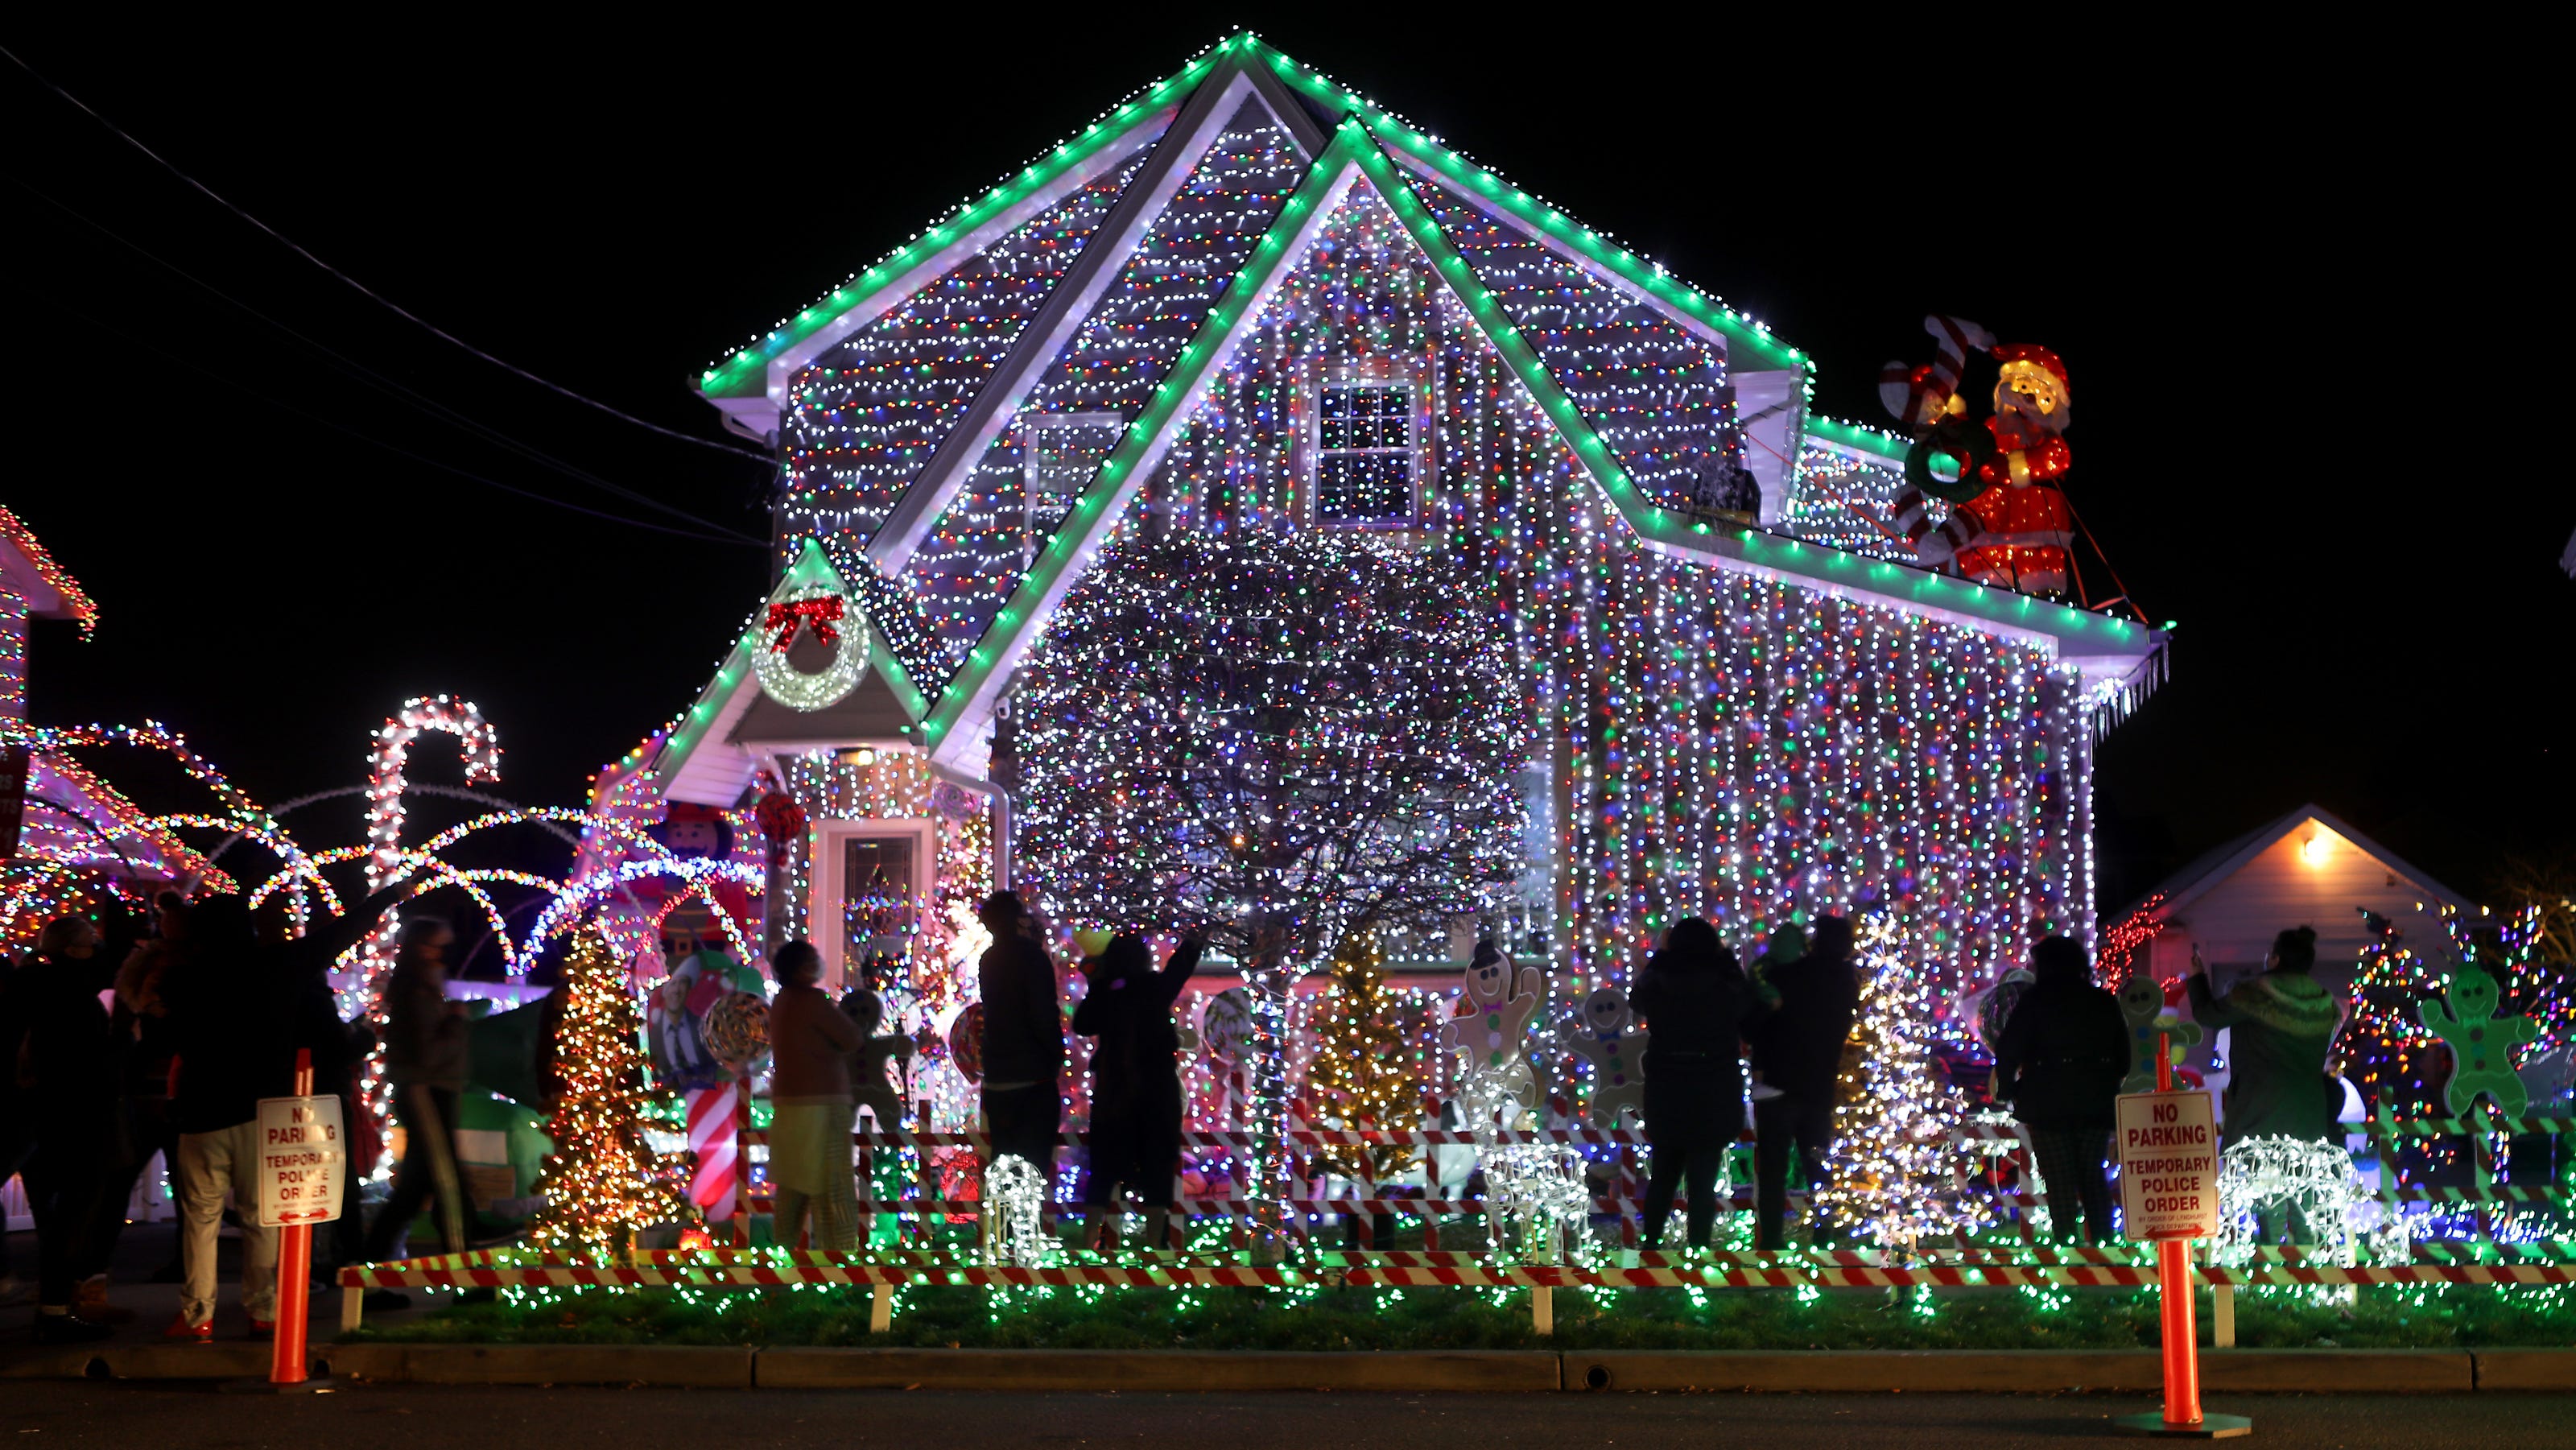 Lyndhurst Nj Massive Christmas Light Display Draws Crowds